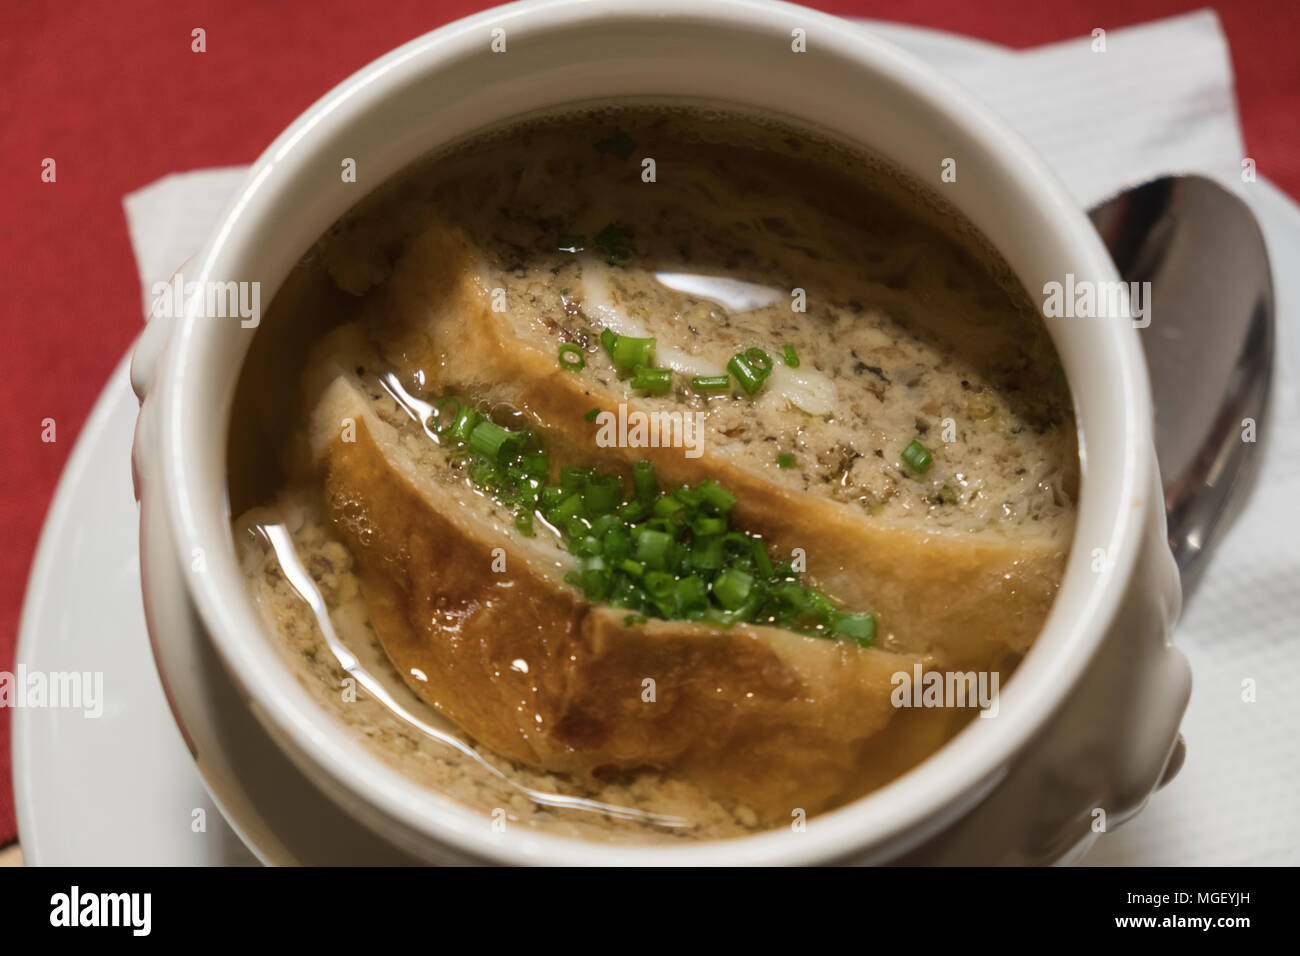 Traditionelle österreichische Fleisch strudel Ion eine Schüssel Suppe  serviert Stockfotografie - Alamy